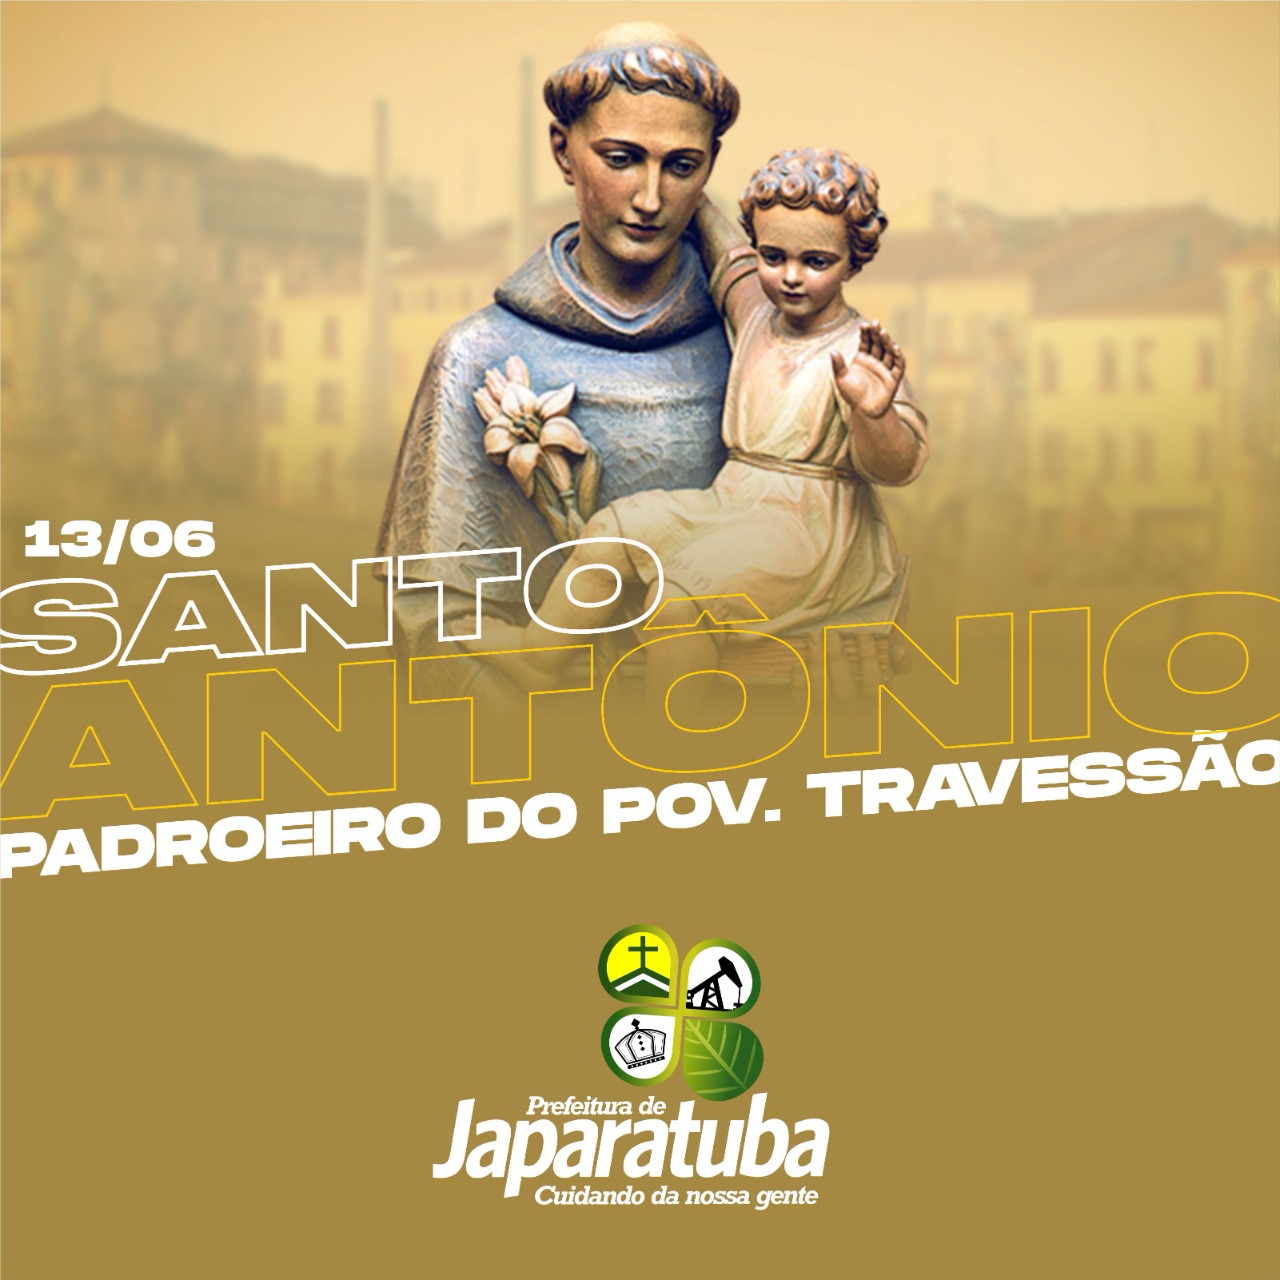 Com apoio da Prefeitura de Santo Antônio de Jesus, teve início